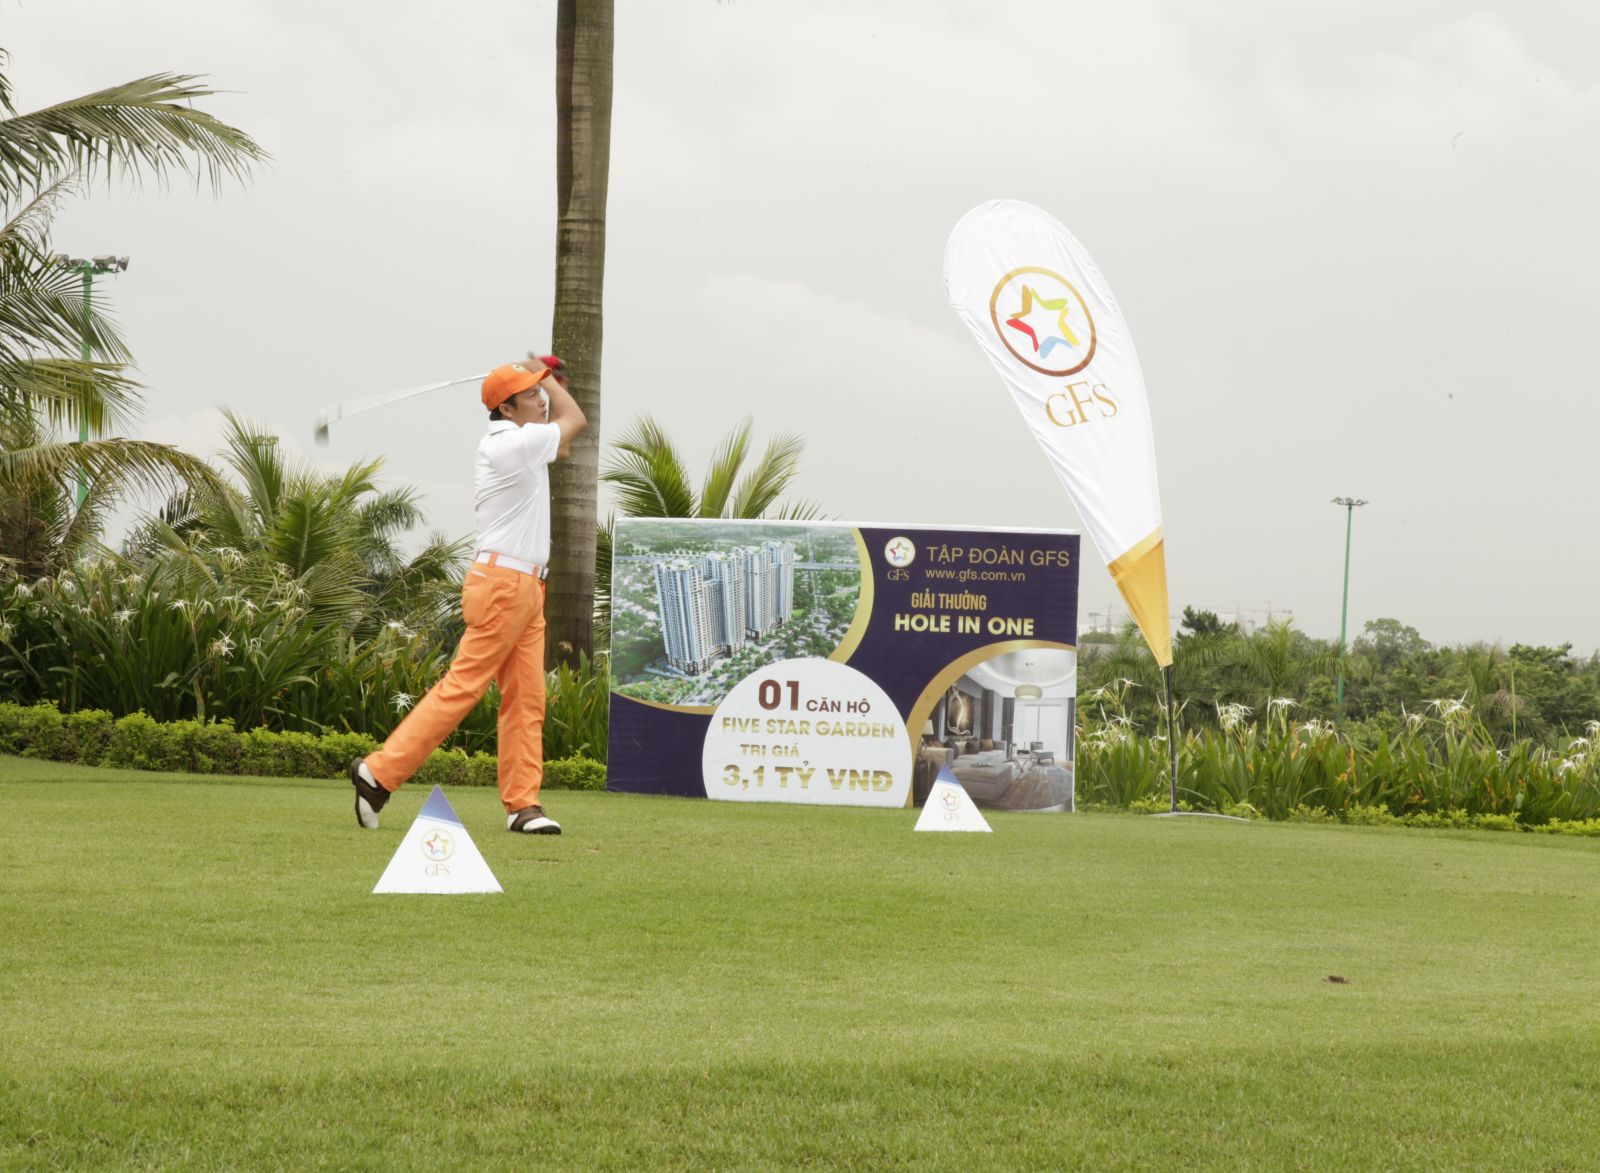 Giải Vô địch các CLB Golf Hà Nội lần thứ 2 – GFS Cup quy tụ 34 câu lạc bộ Golf với 408 golf thủ.